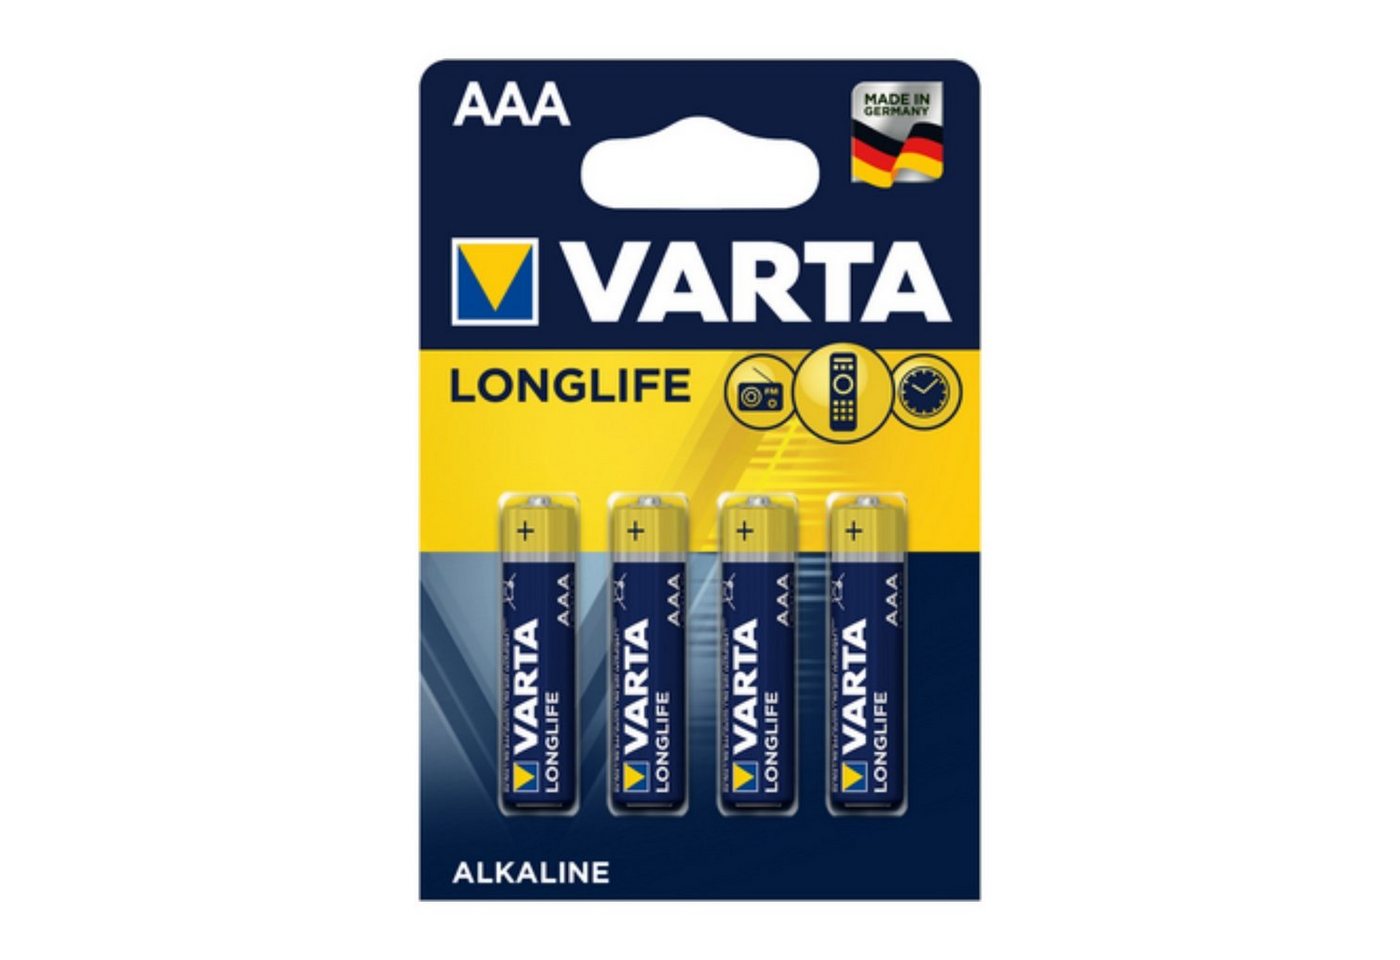 VARTA VARTA Longlife 4103 AAA BL4 Alkaline Einweg Batterie 1,5V Batterie von VARTA